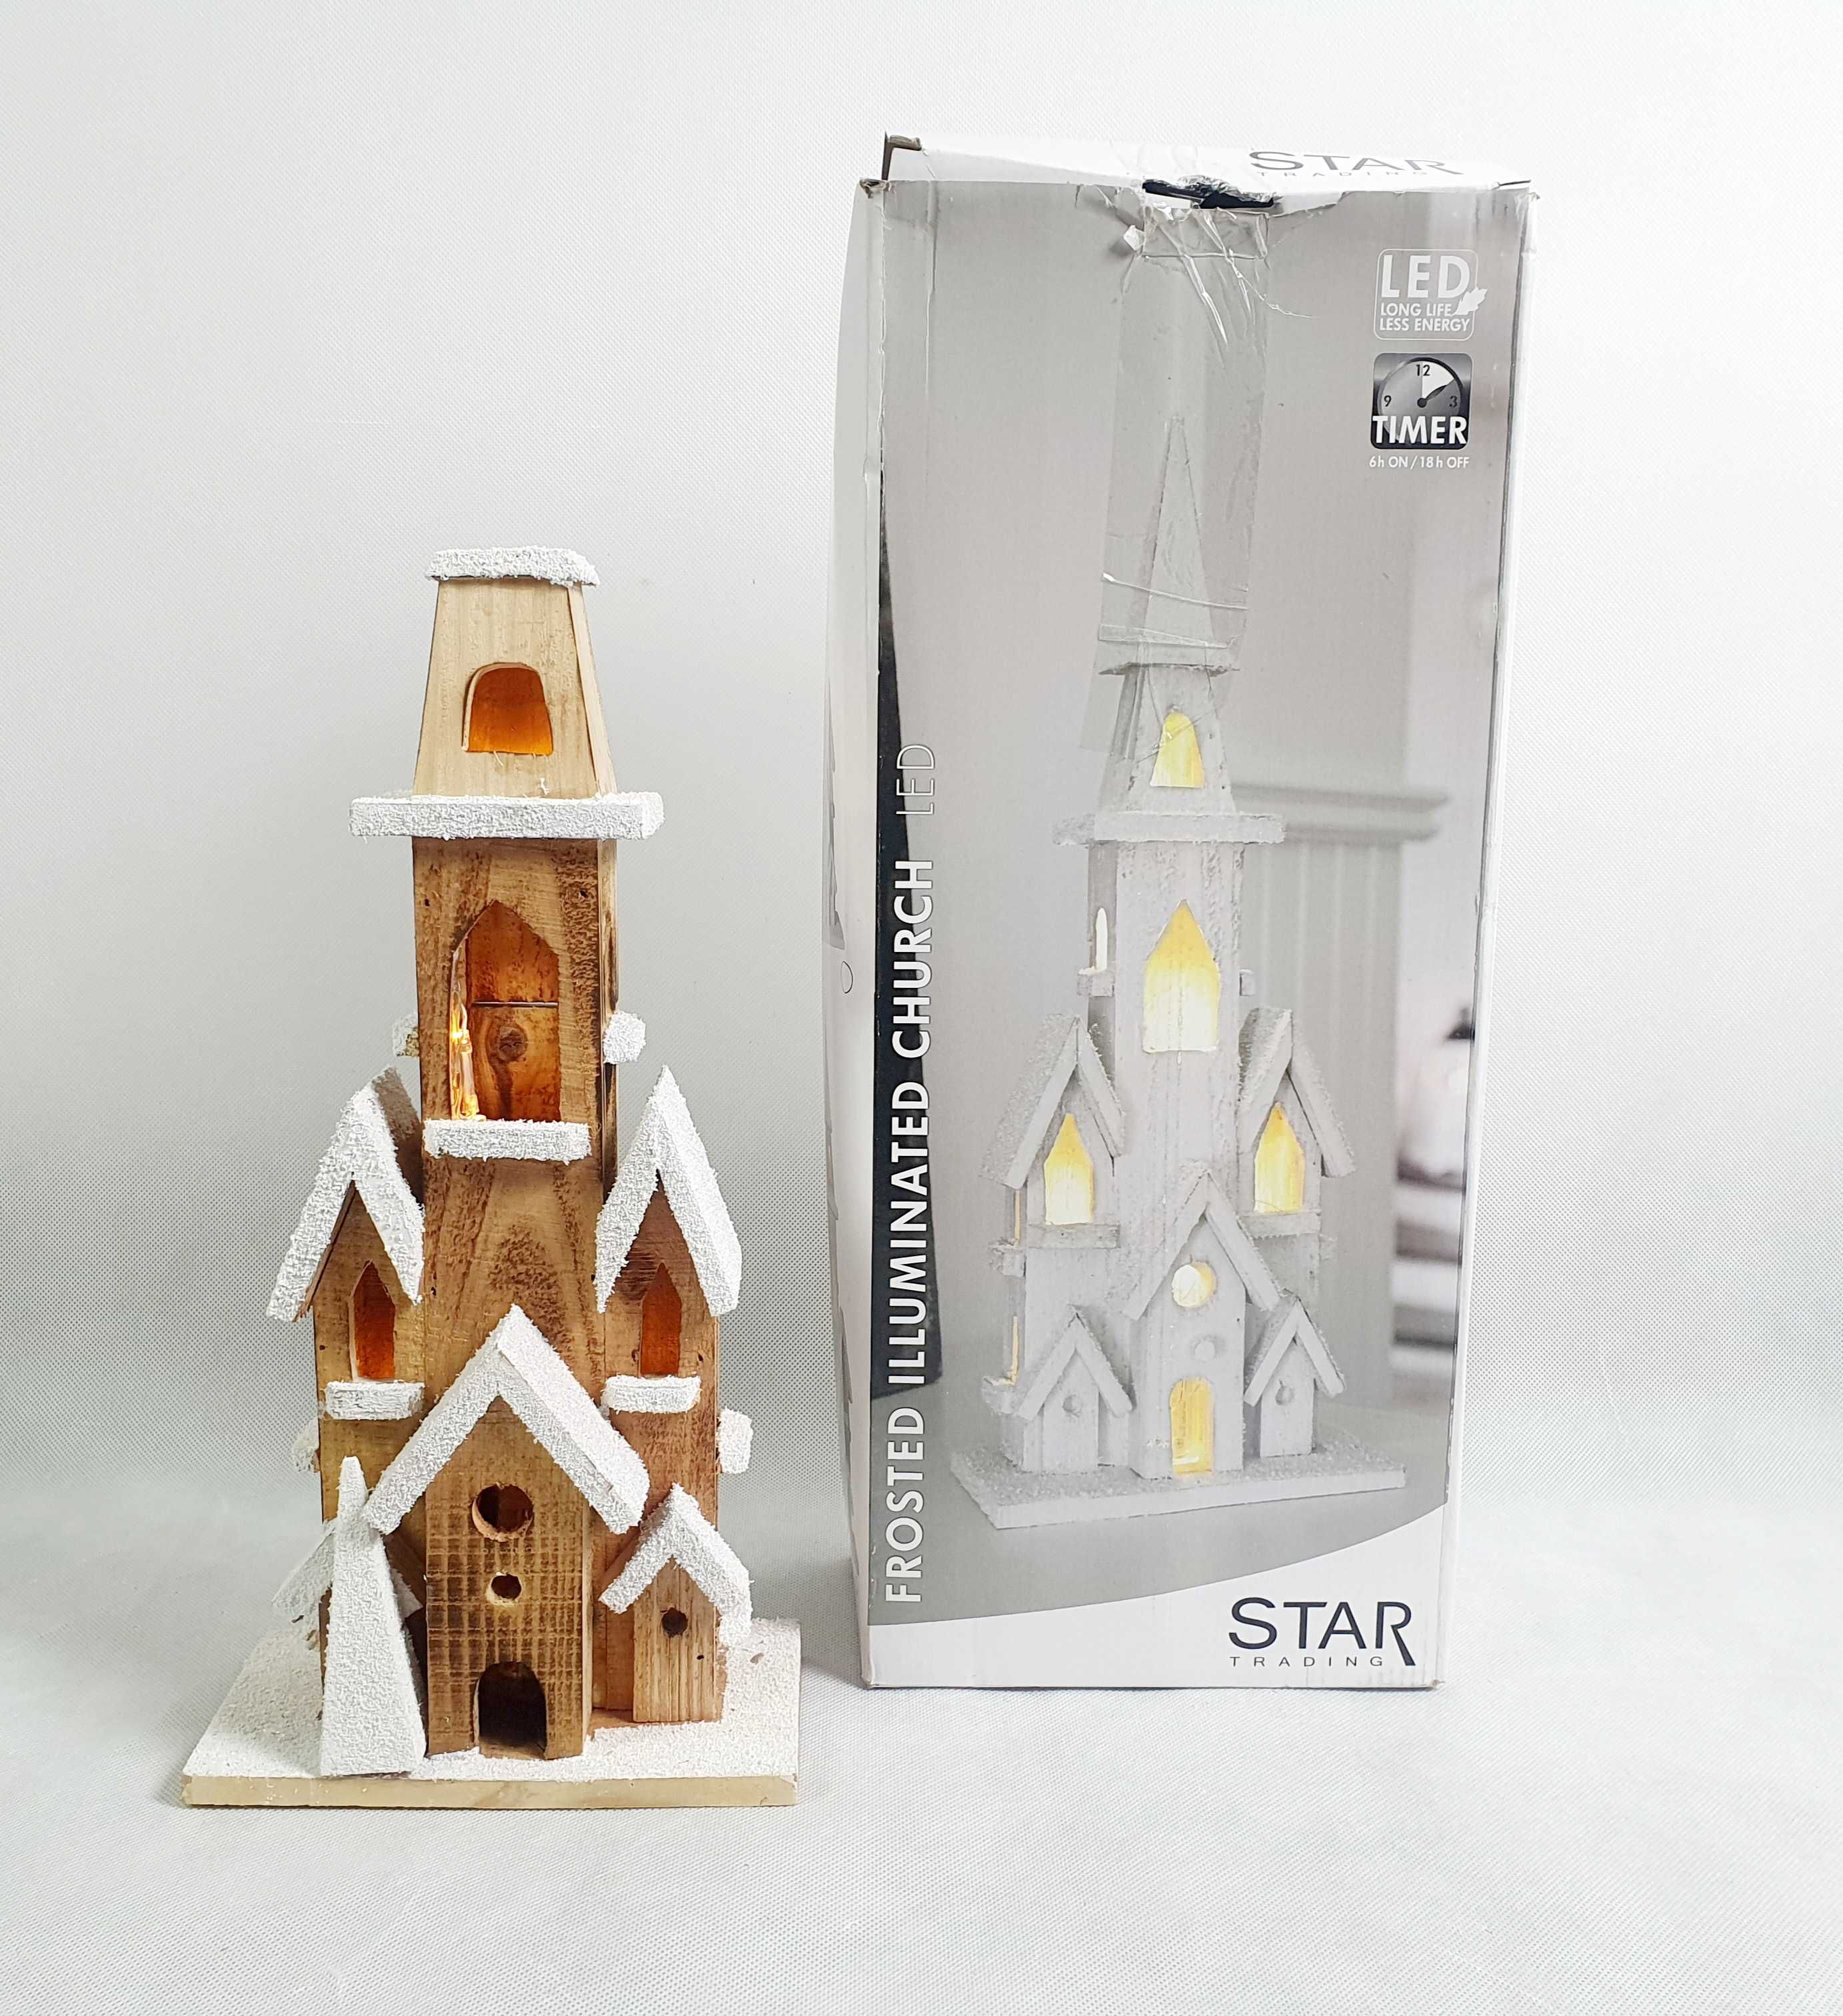 LED Star trading Świecący drewniany kościół święta AA 50 cm